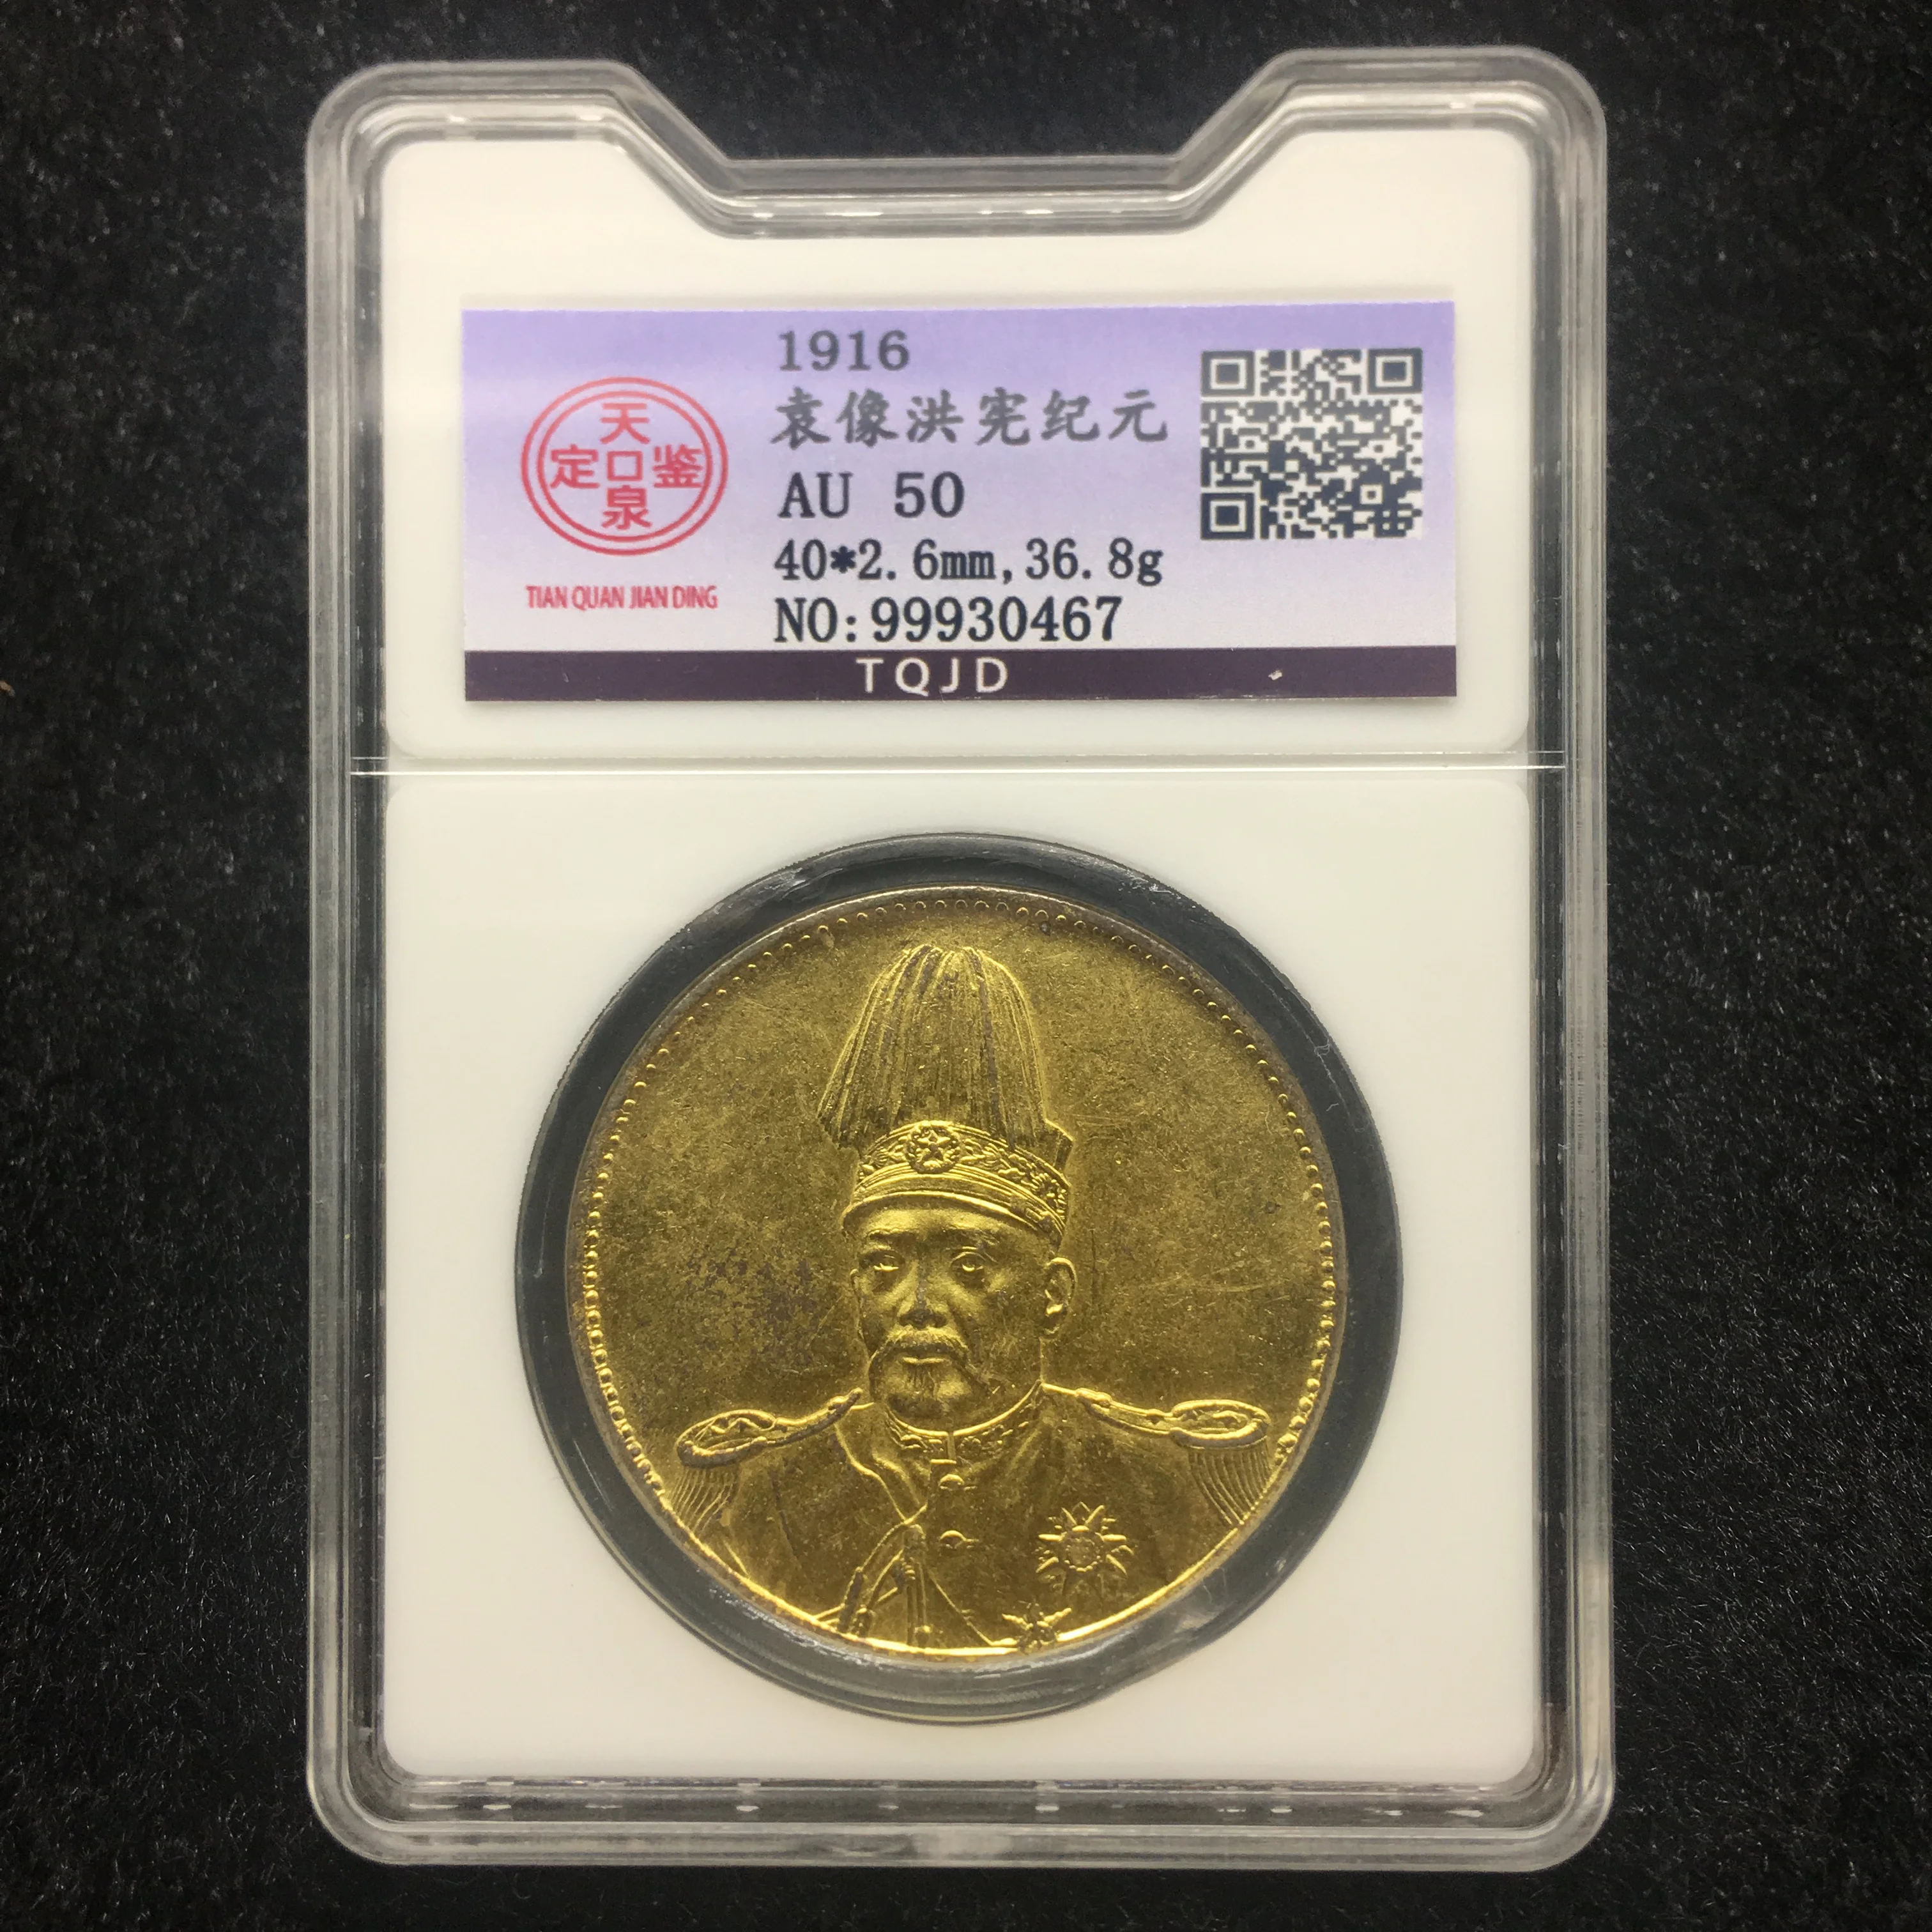 1916 chinesischen Drachen 999 Original Gold Silber Münze Bewertung Münzen Versiegelt in Box, High Grade abgestuften münze AU50